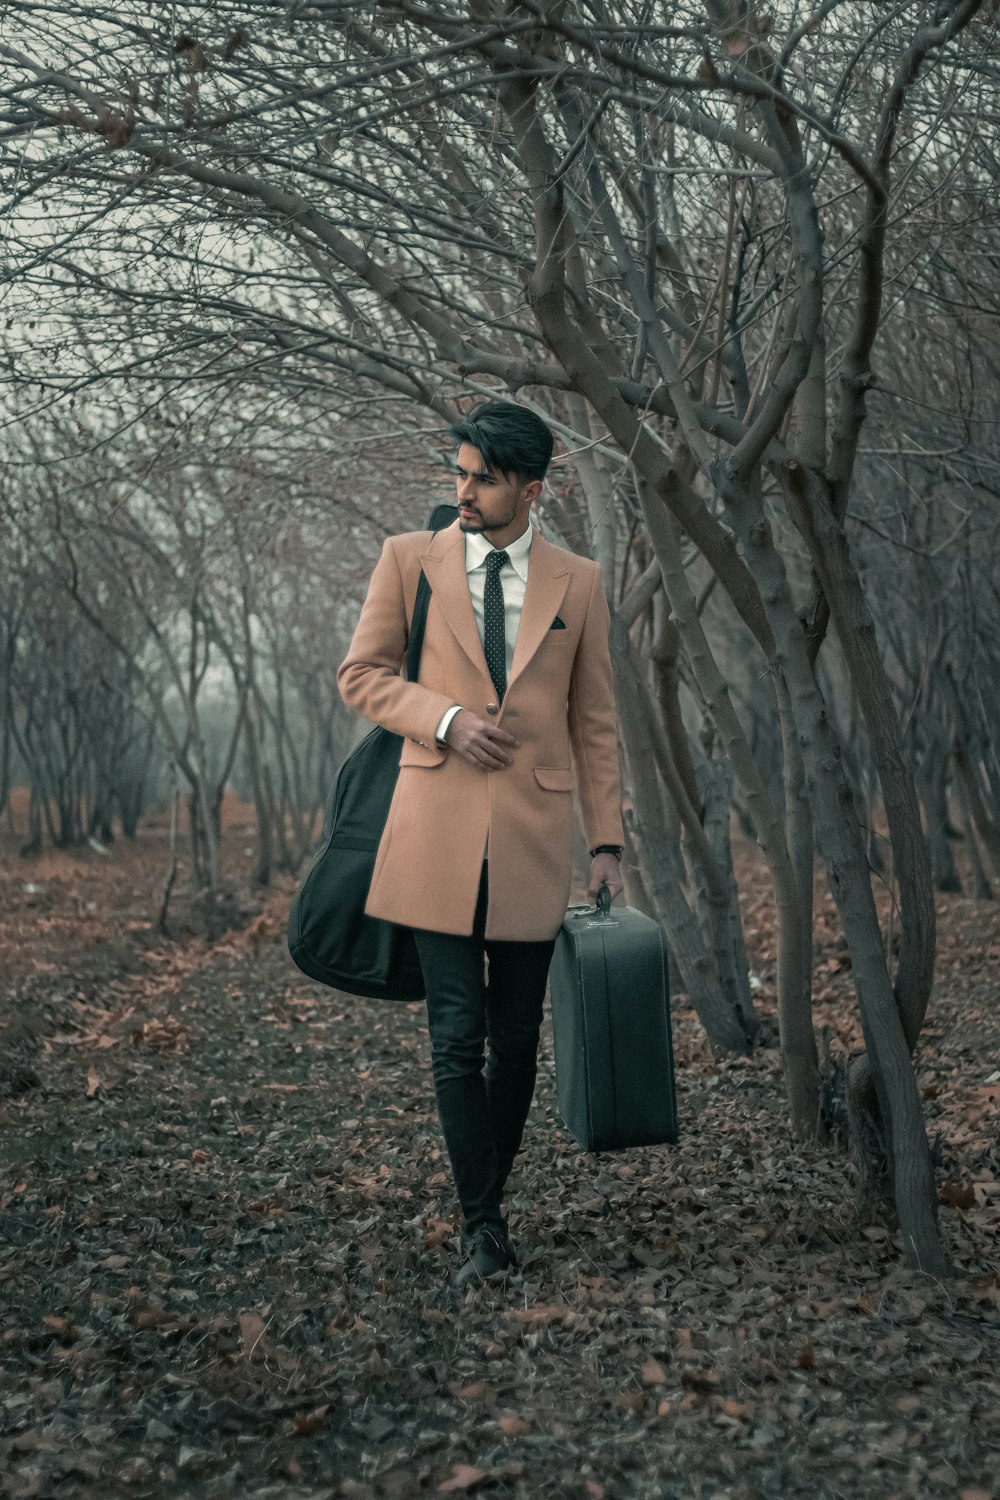 Ein Mann geht mit einem Koffer durch einen Wald